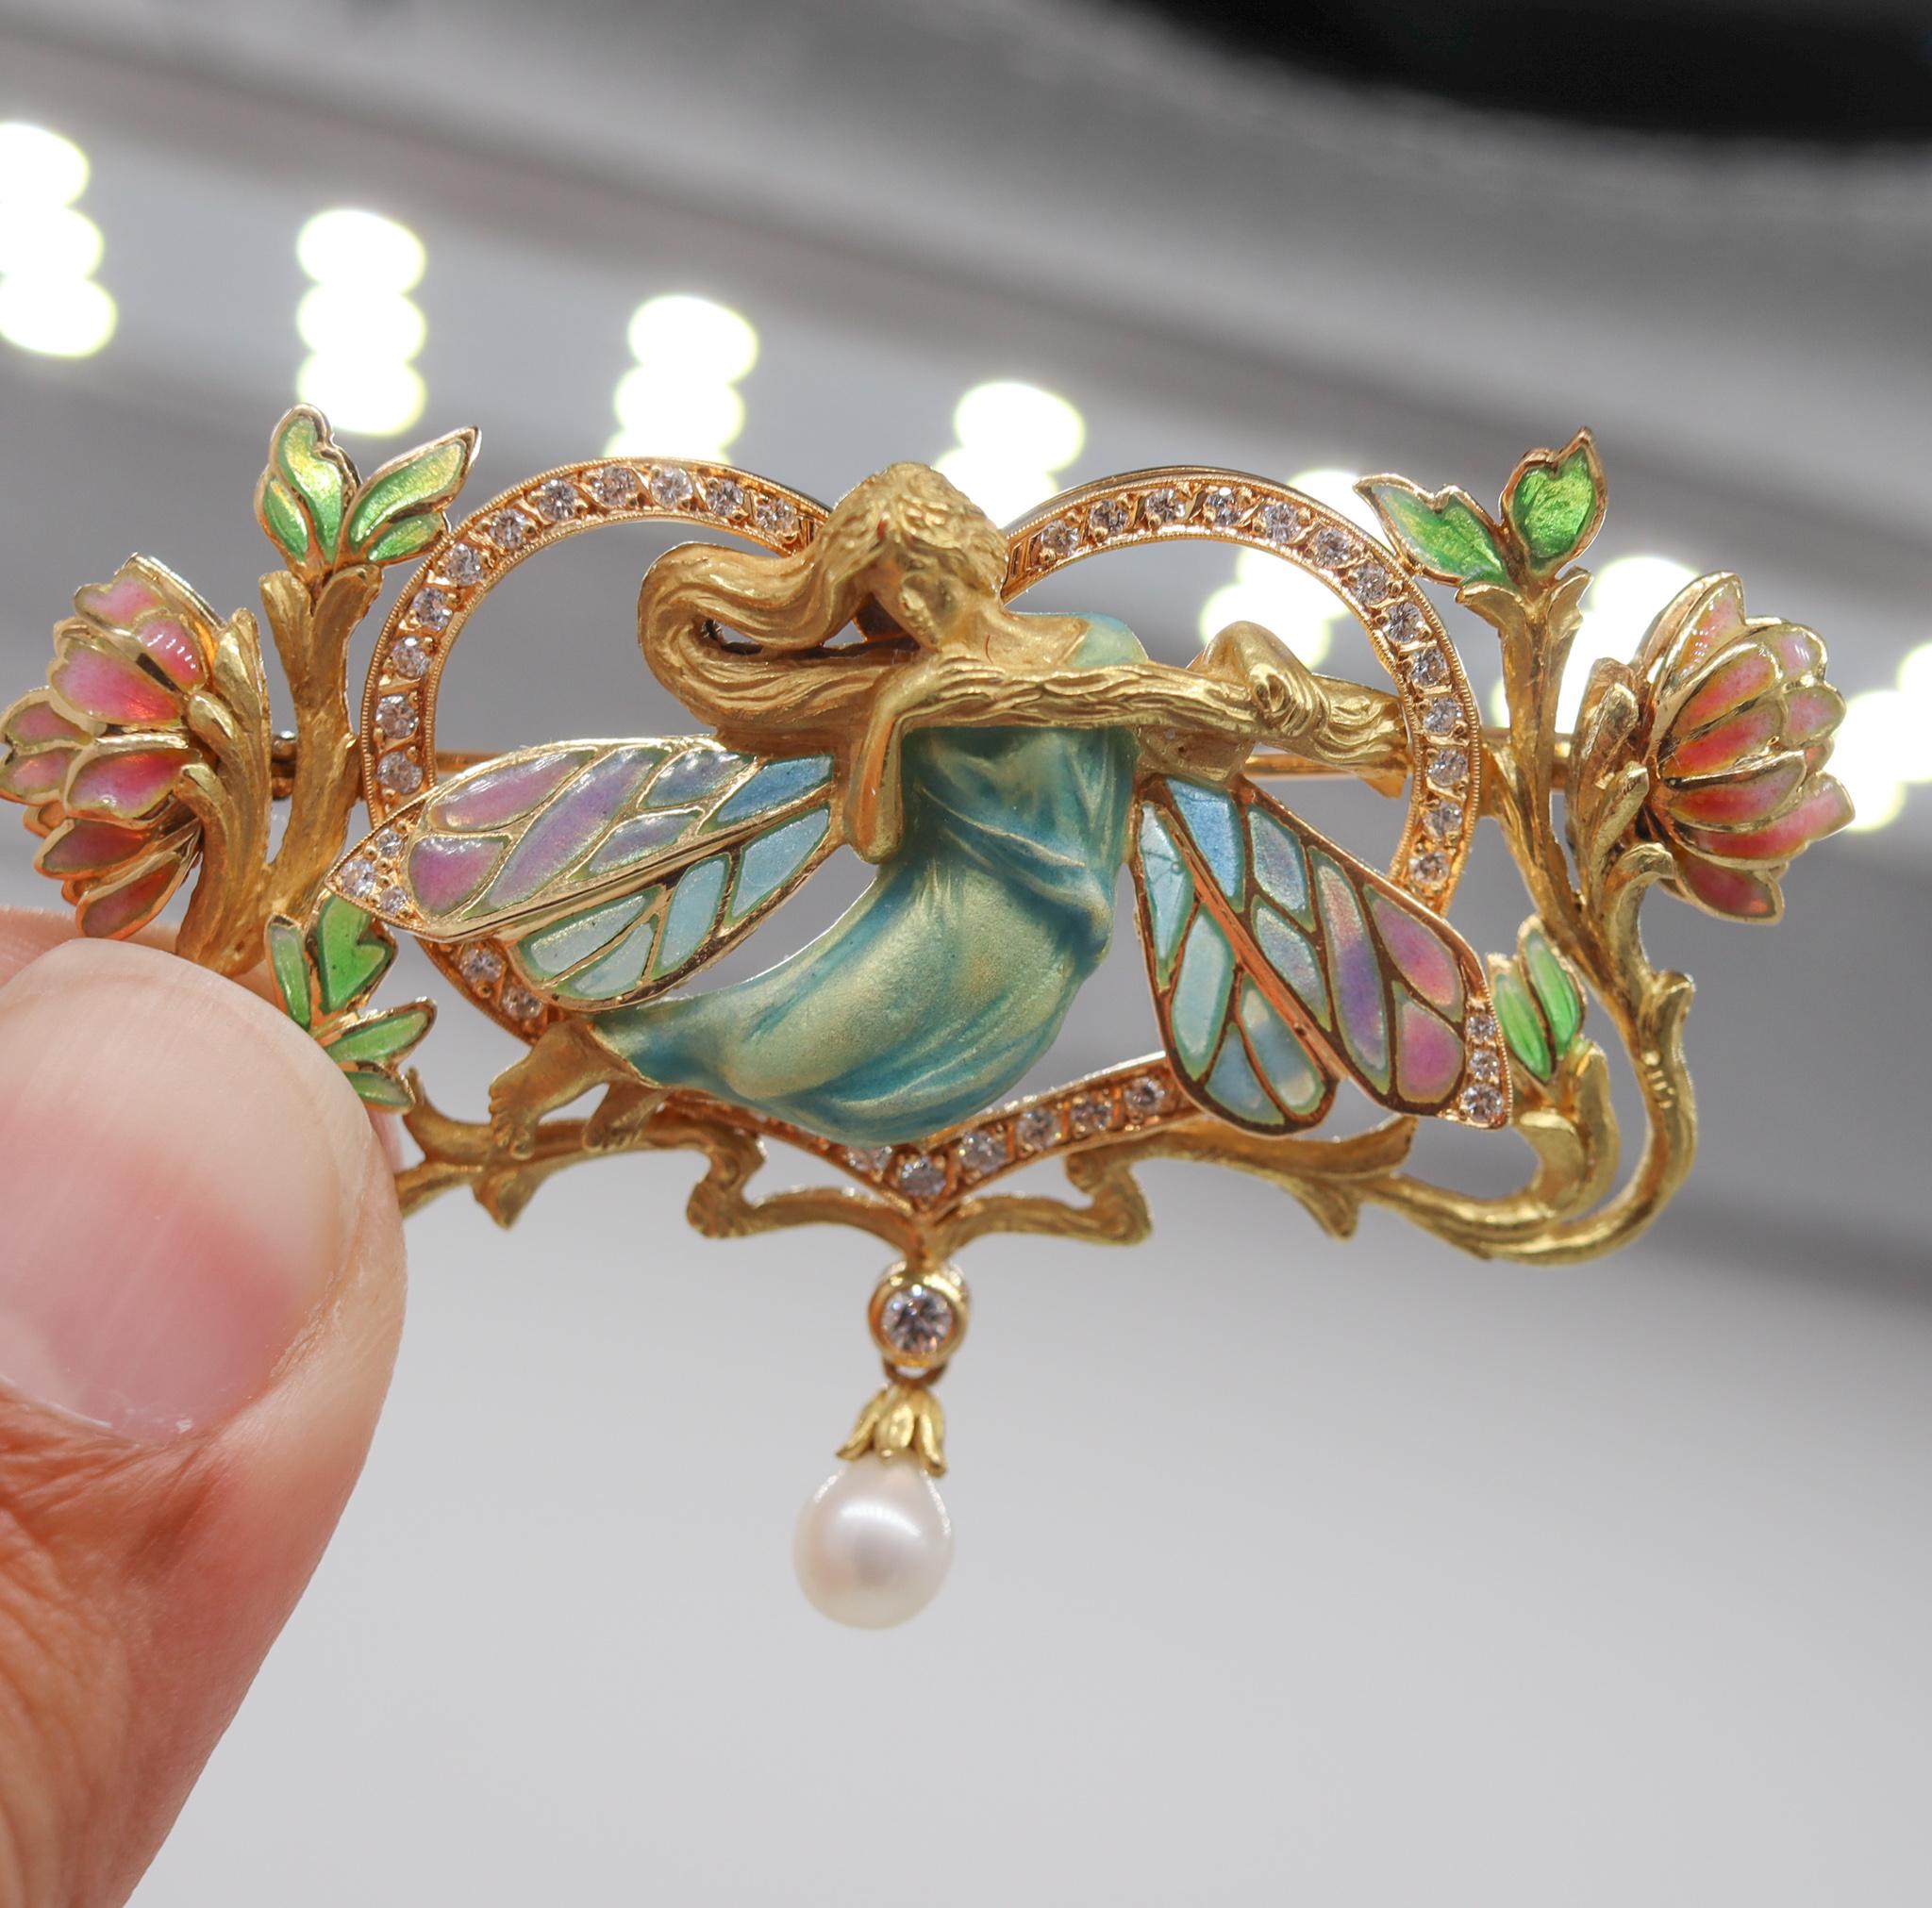 Brilliant Cut Masriera Art Nouveau Plique à Jour Enamel Convertible Brooch 18Kt Gold Diamonds